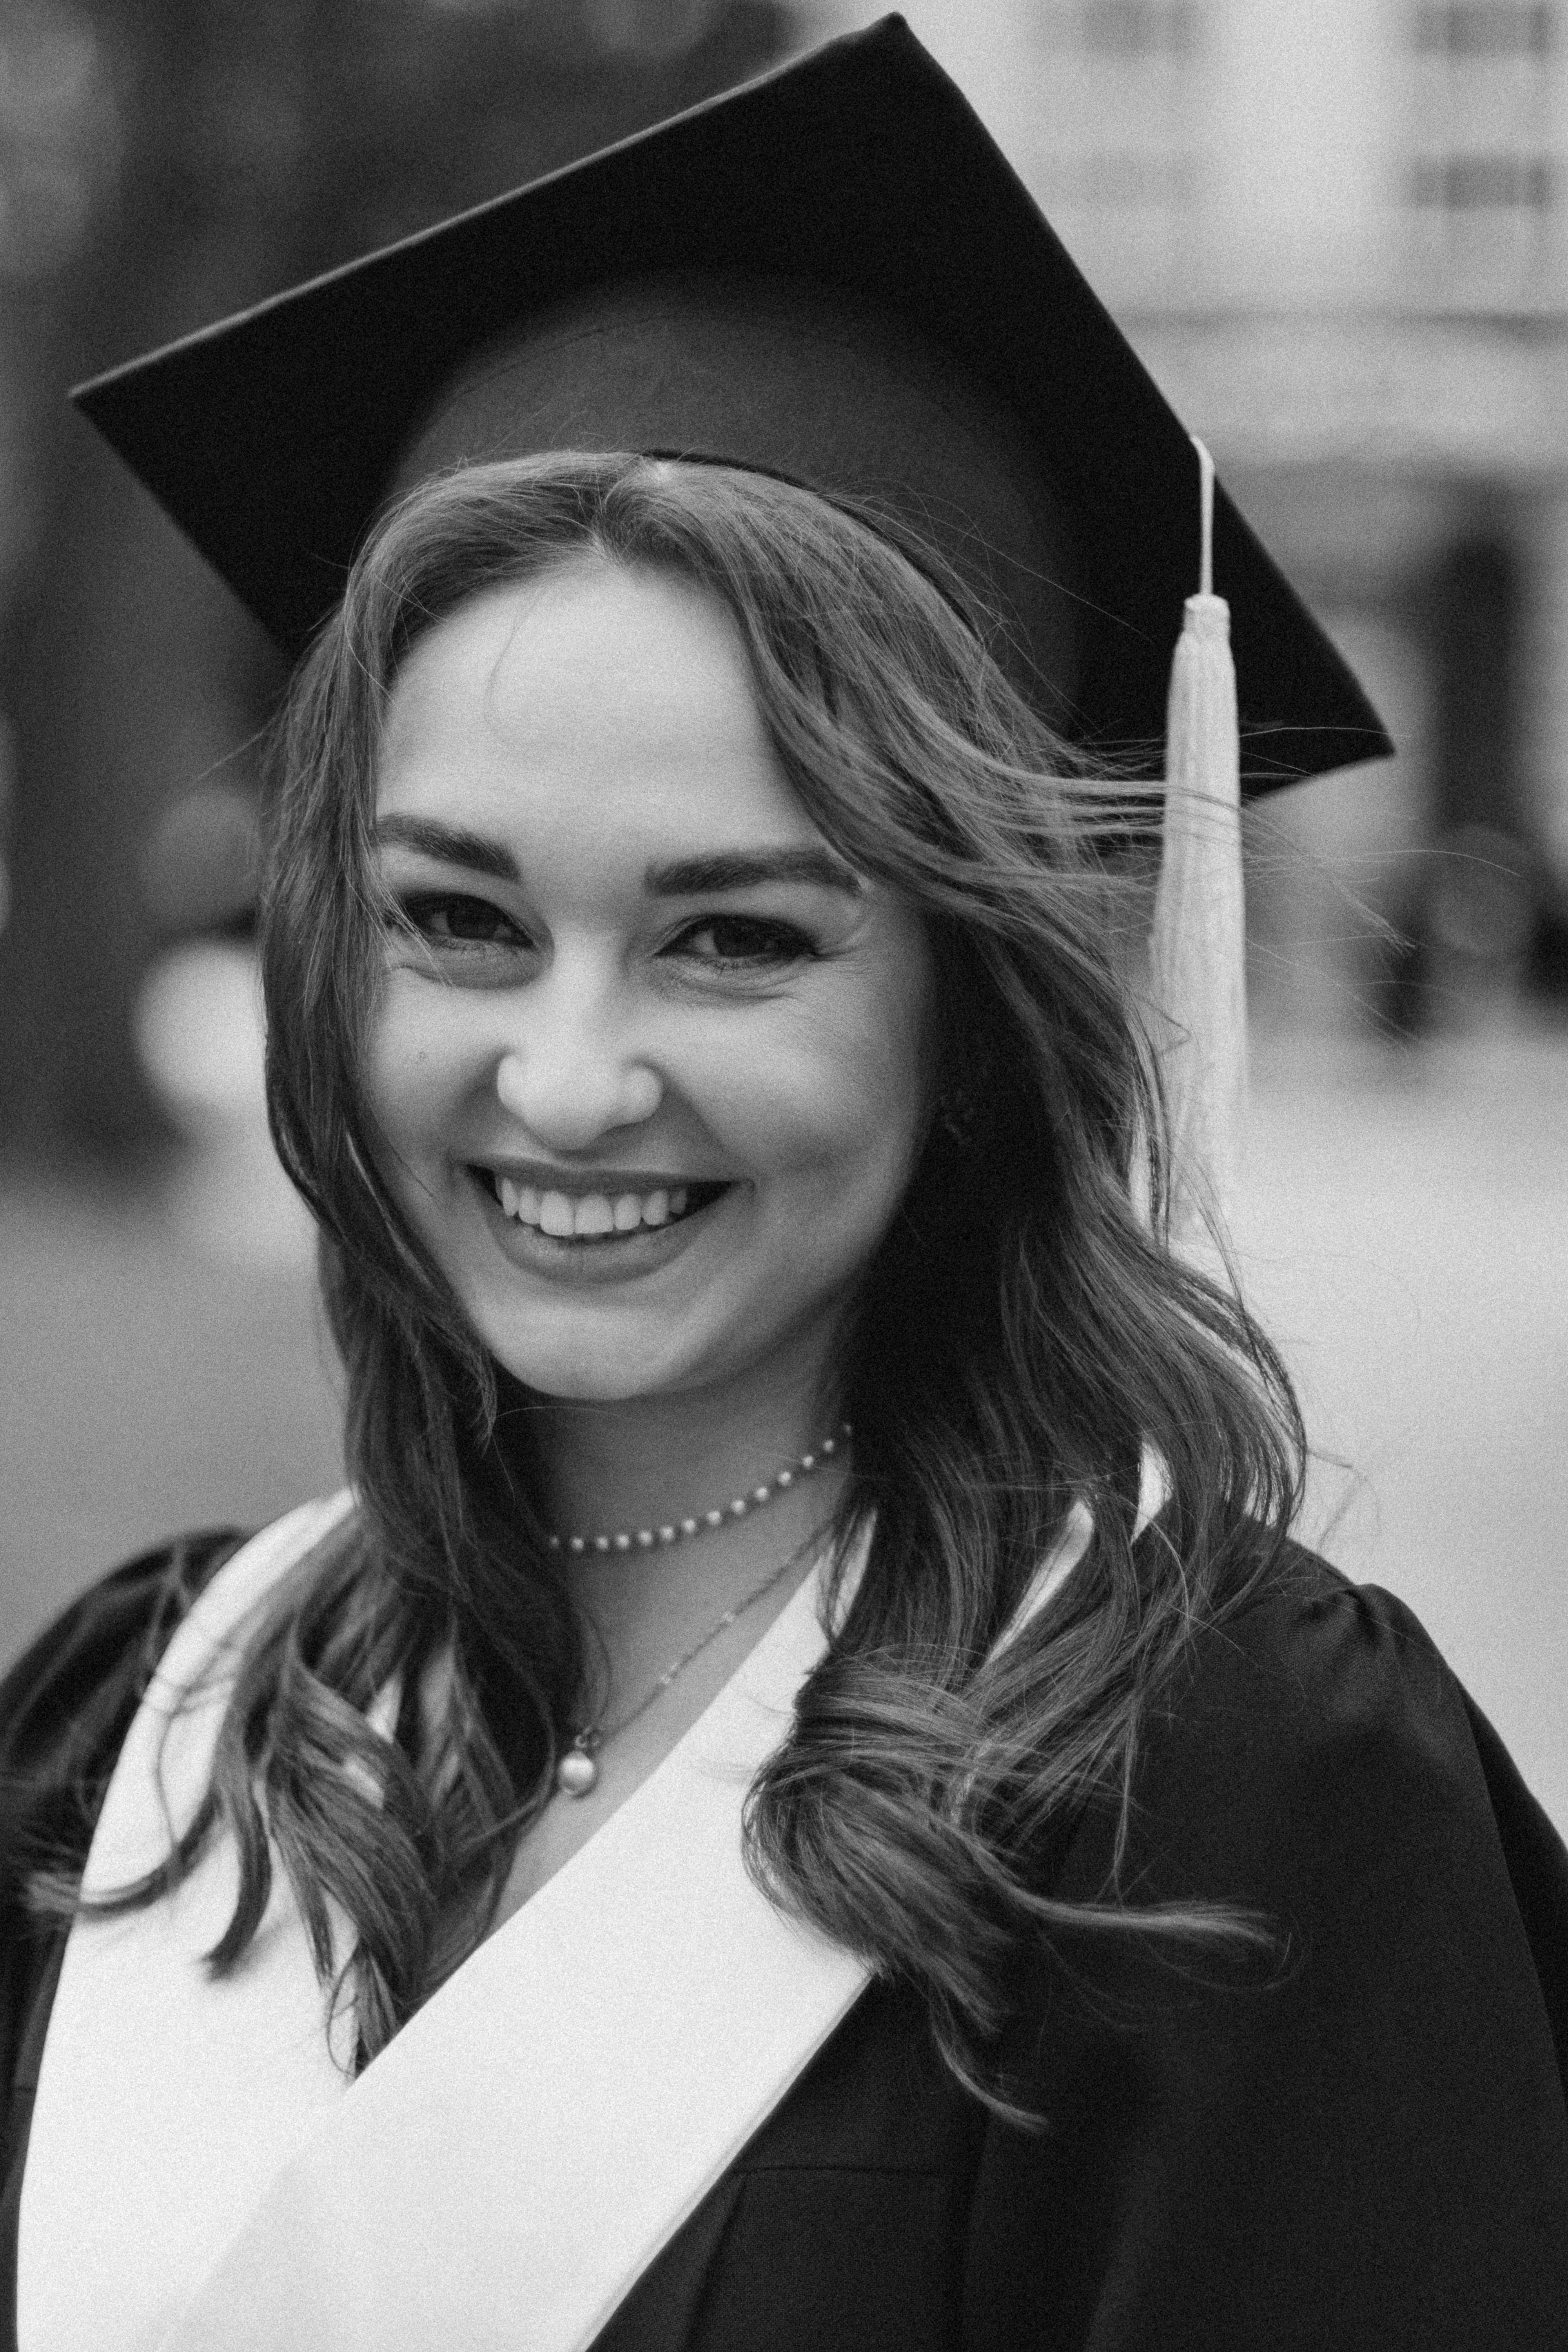 Eine lächelnde Frau bei der Abschlussfeier | Quelle: Pexels